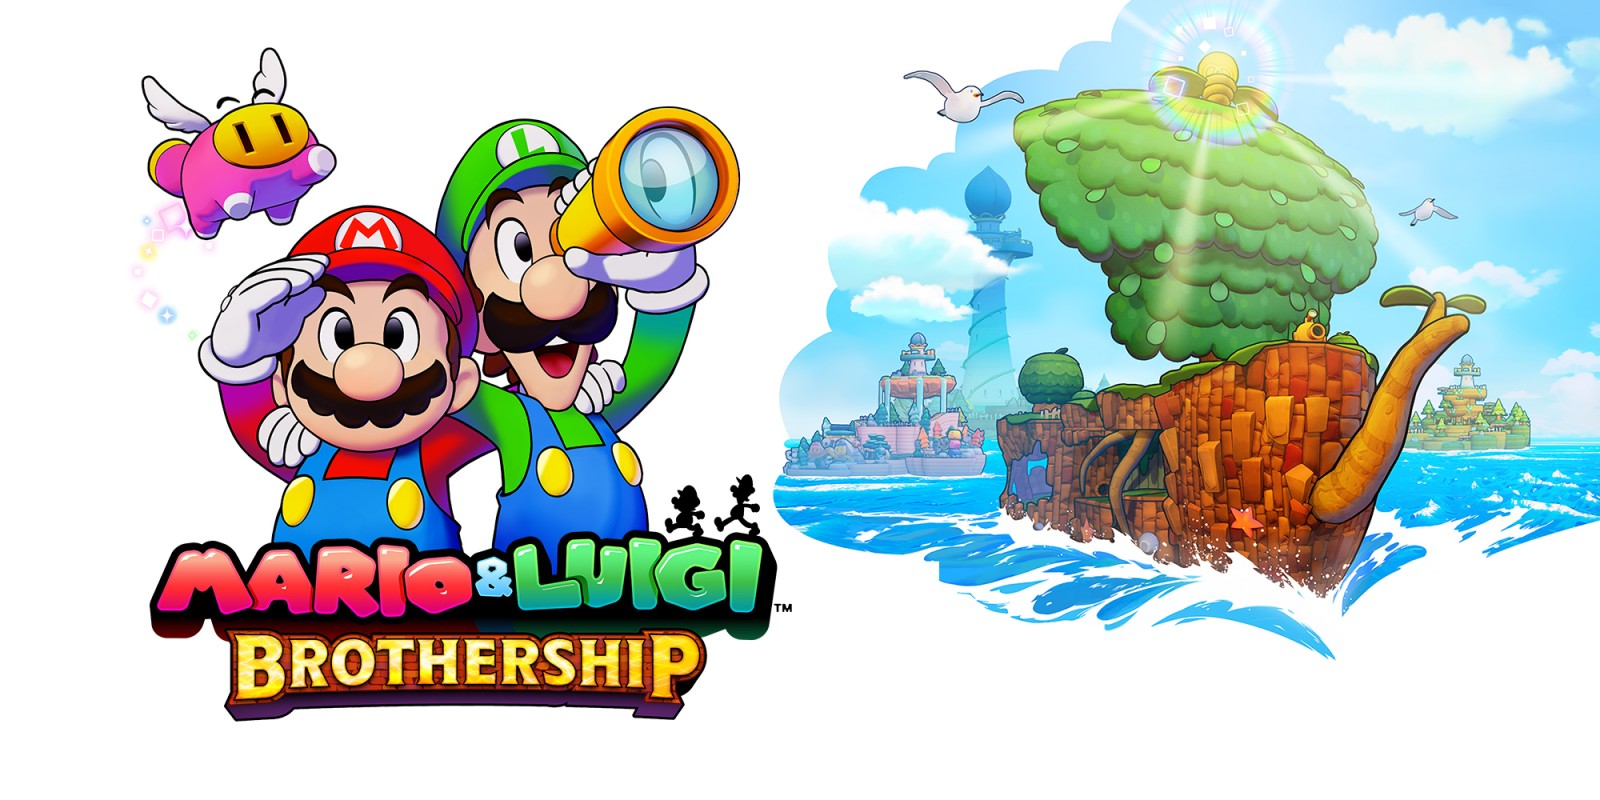 Mario und Luigi: Brothership bei Nintendo Direct angekündigt, Veröffentlichung im November